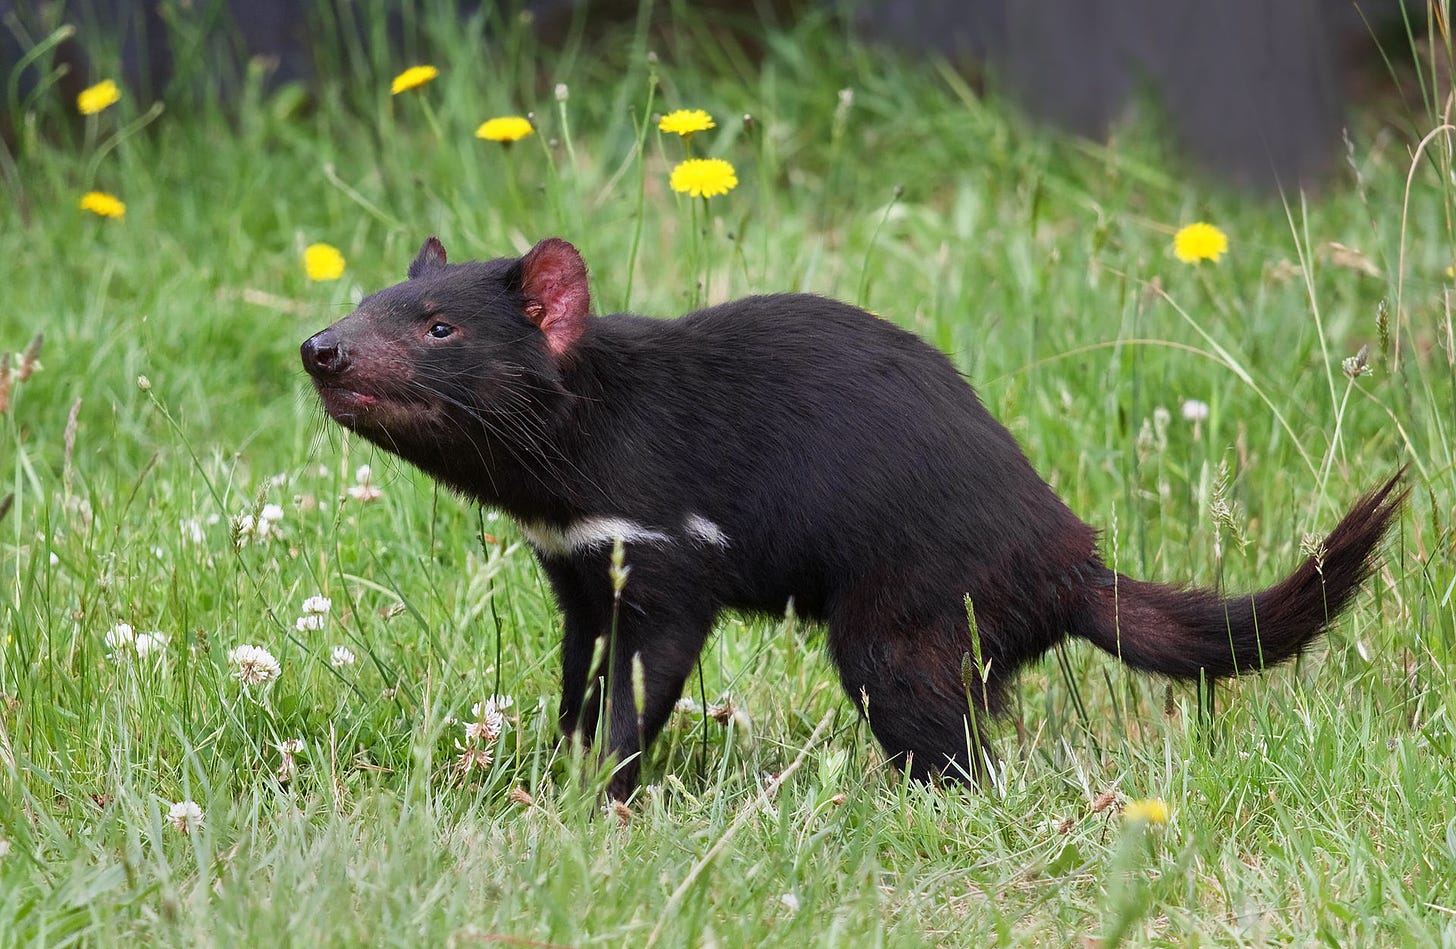 A Tasmanian devil